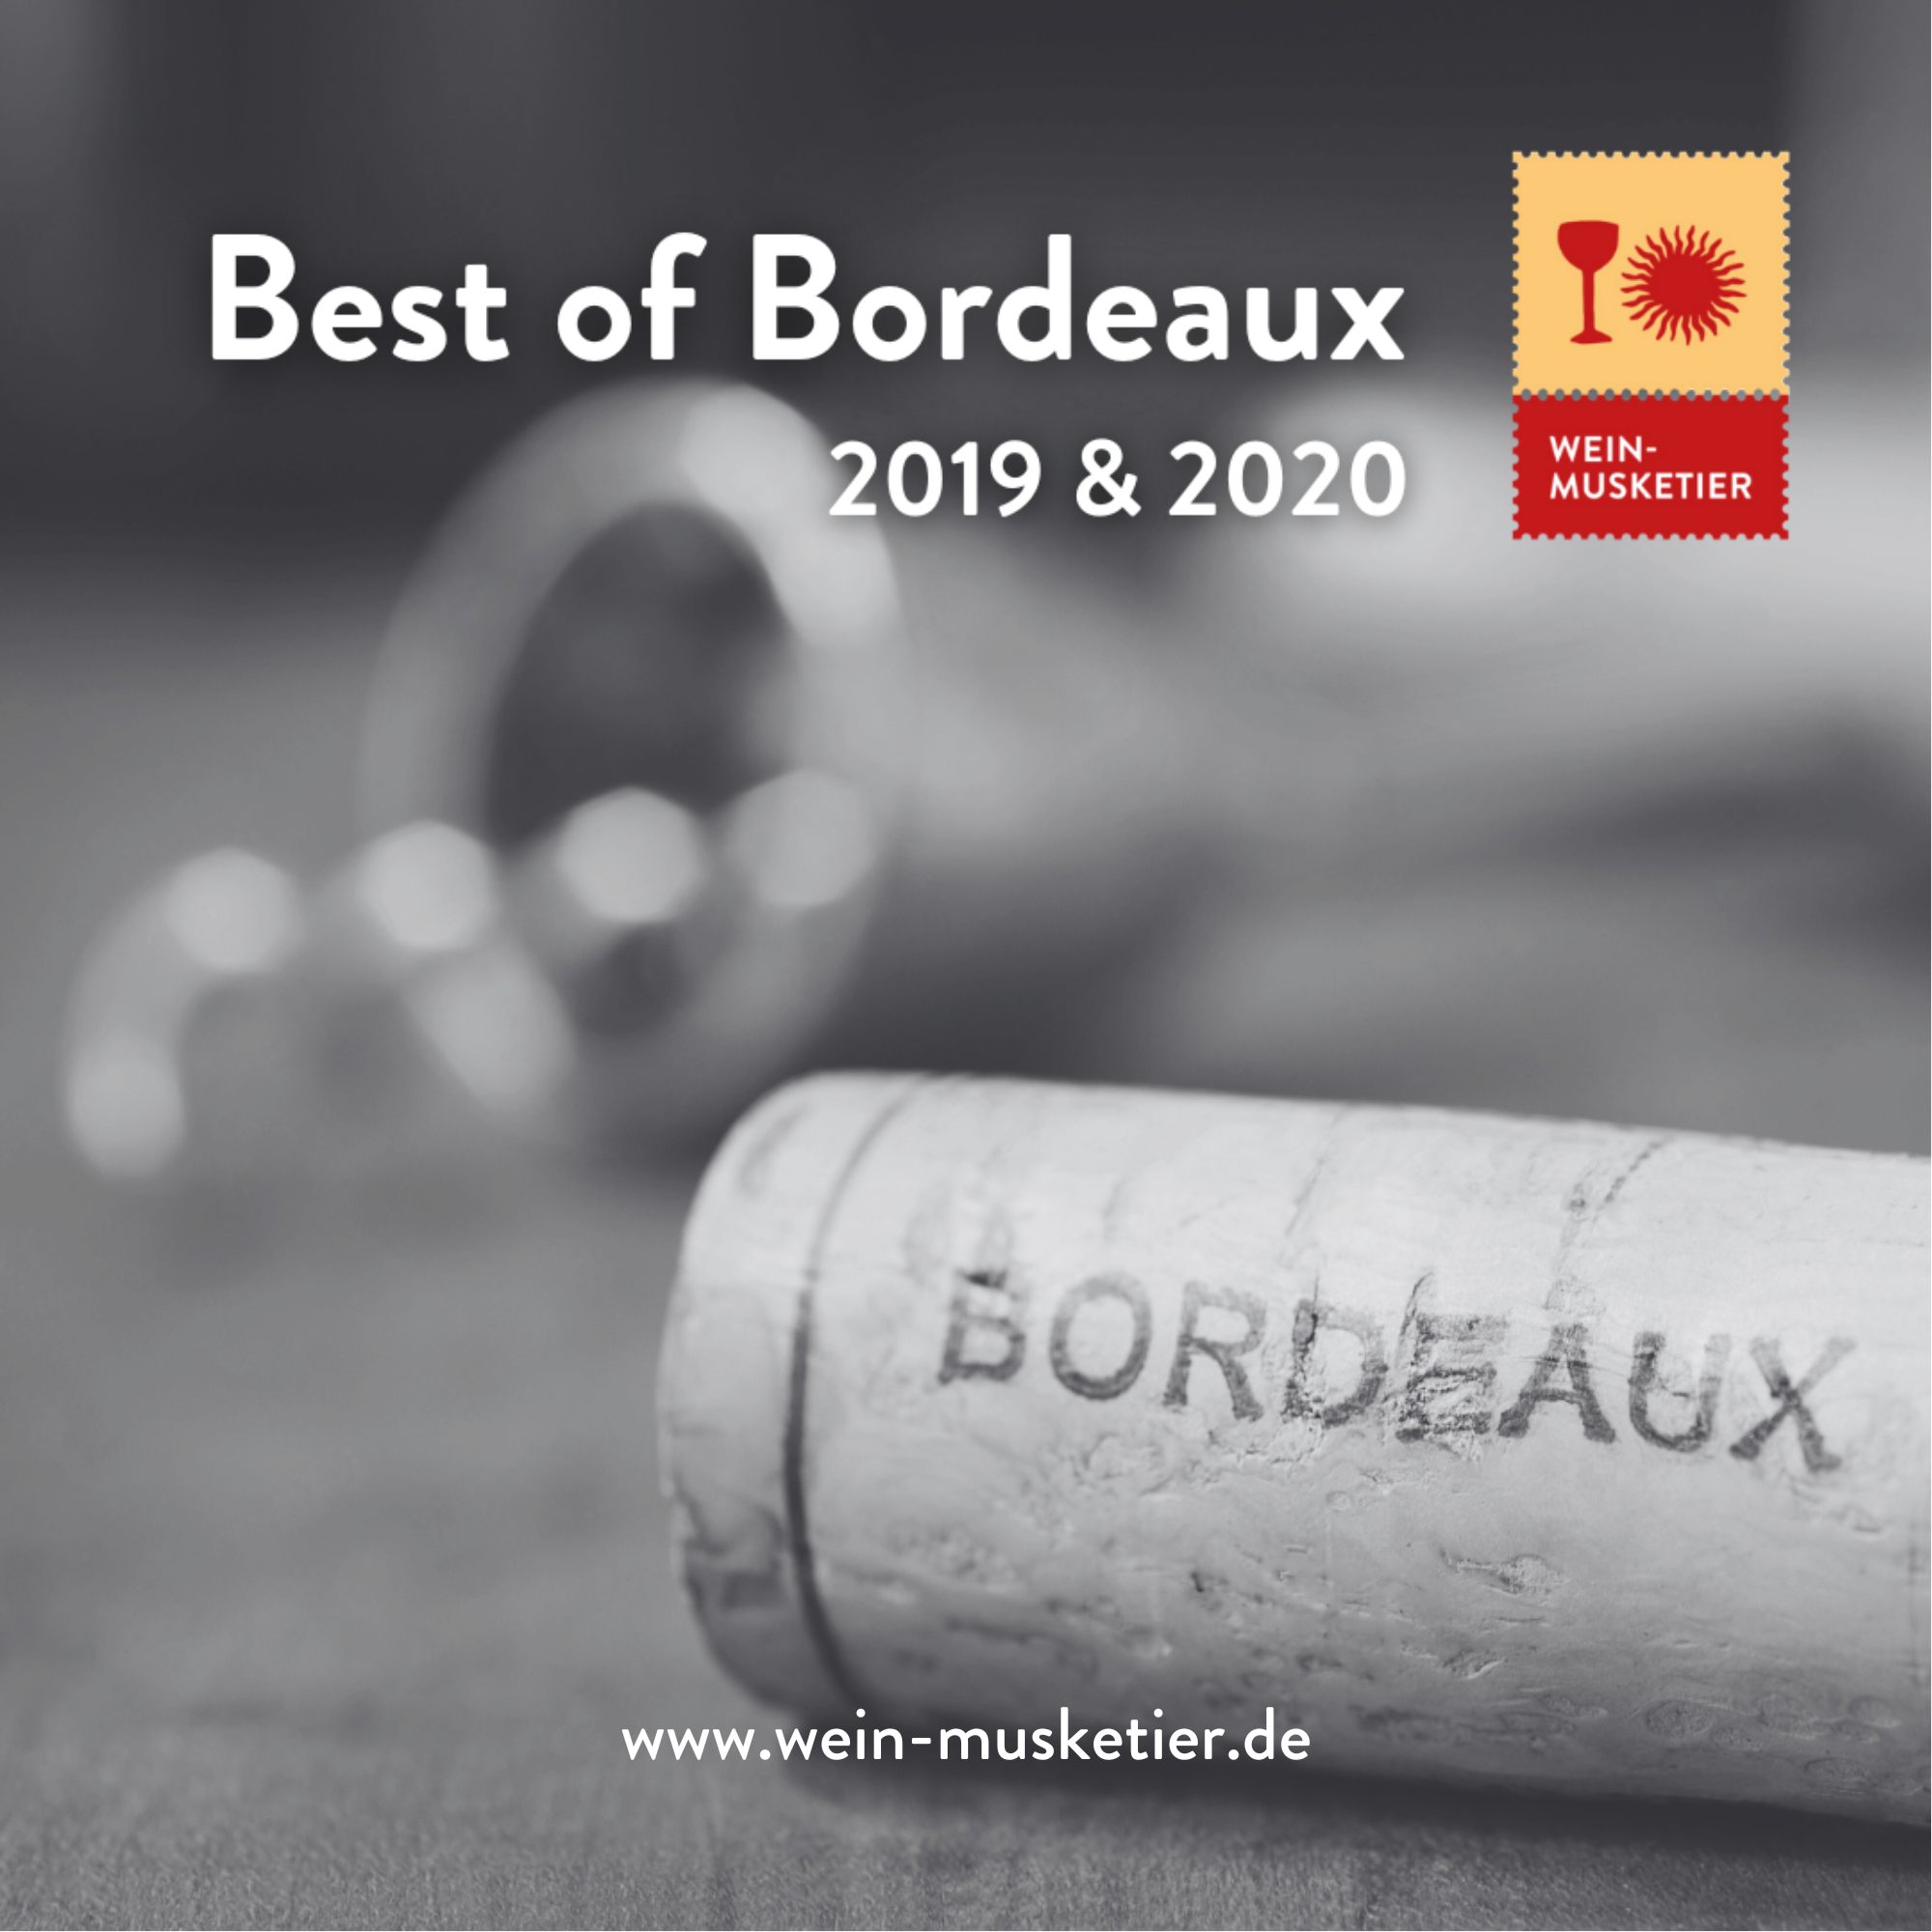 Eine Selektion von Bordeaux-Weinen der Top-Jahrgänge 2019 & 2020